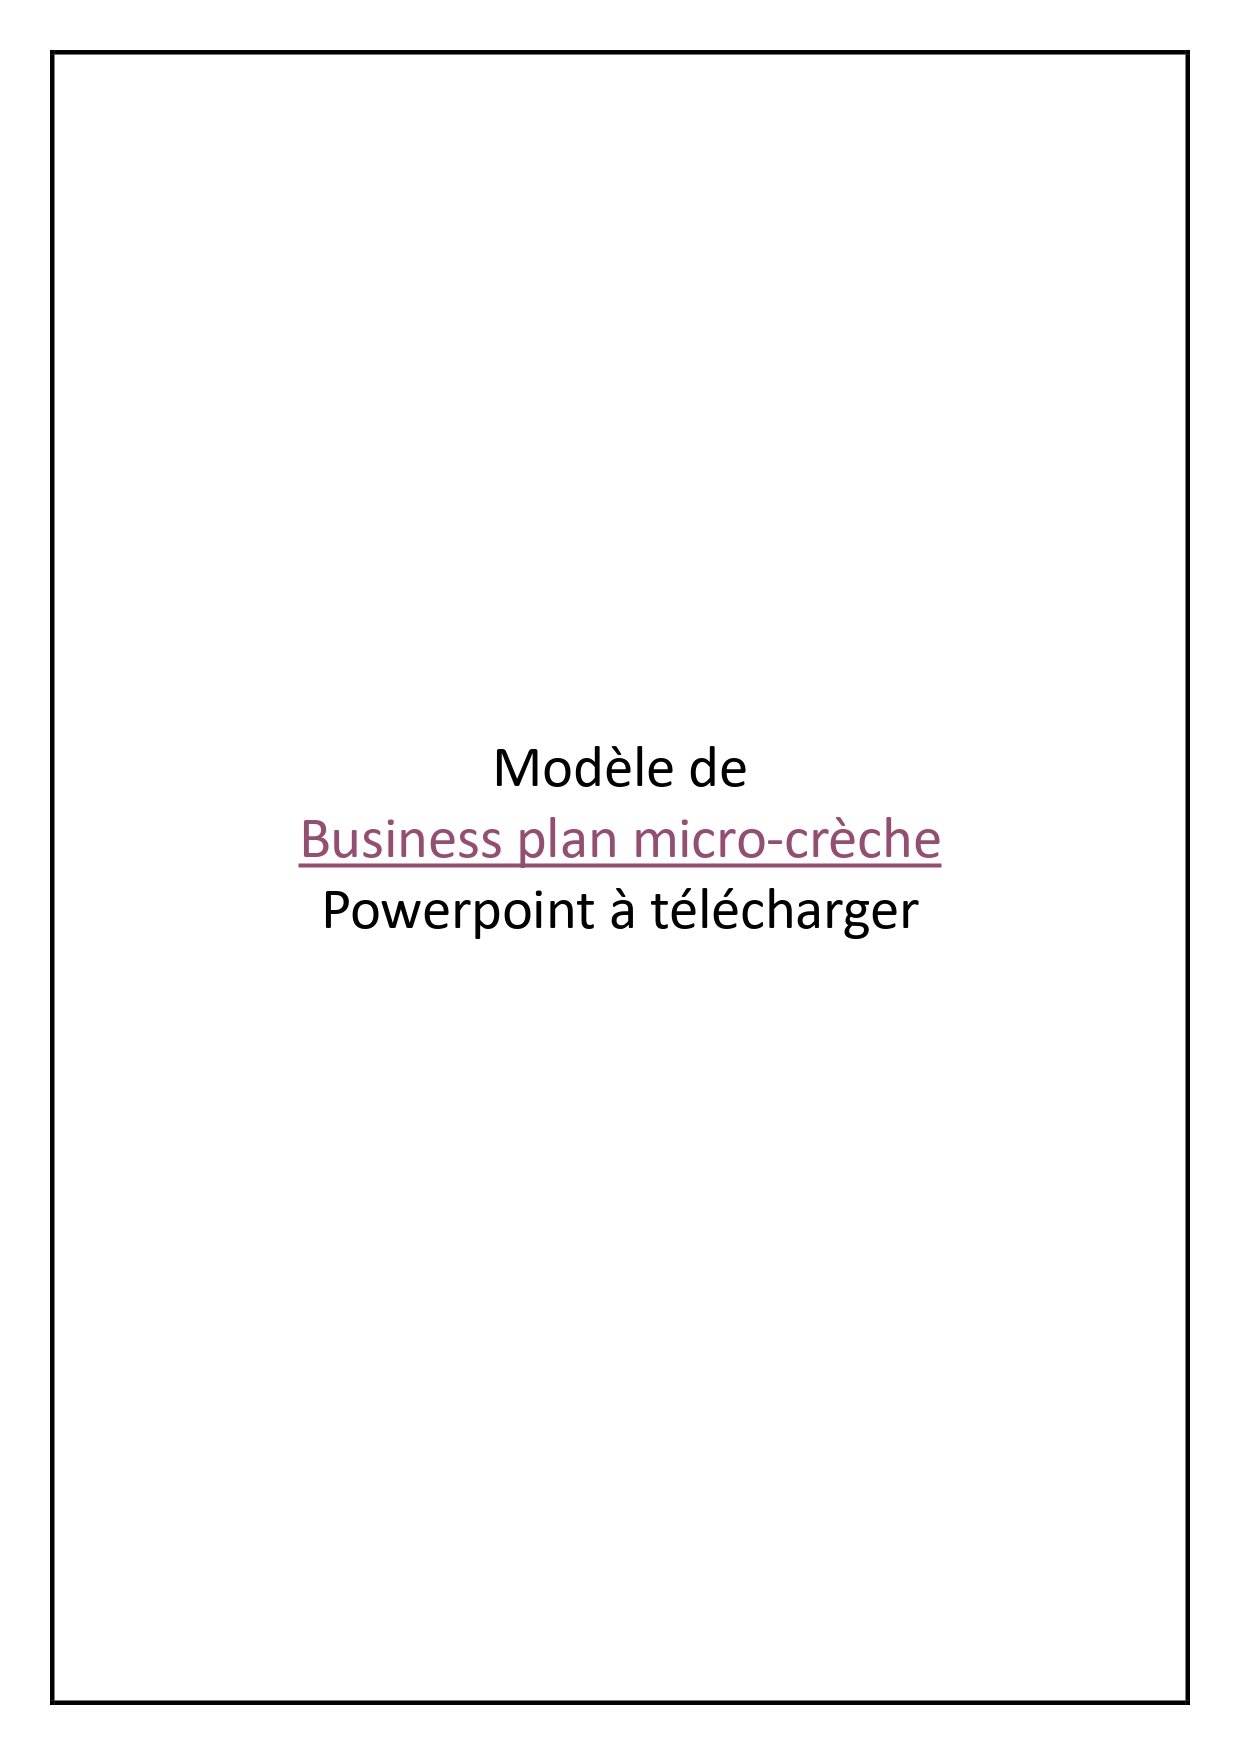 Business plan micro-crèche